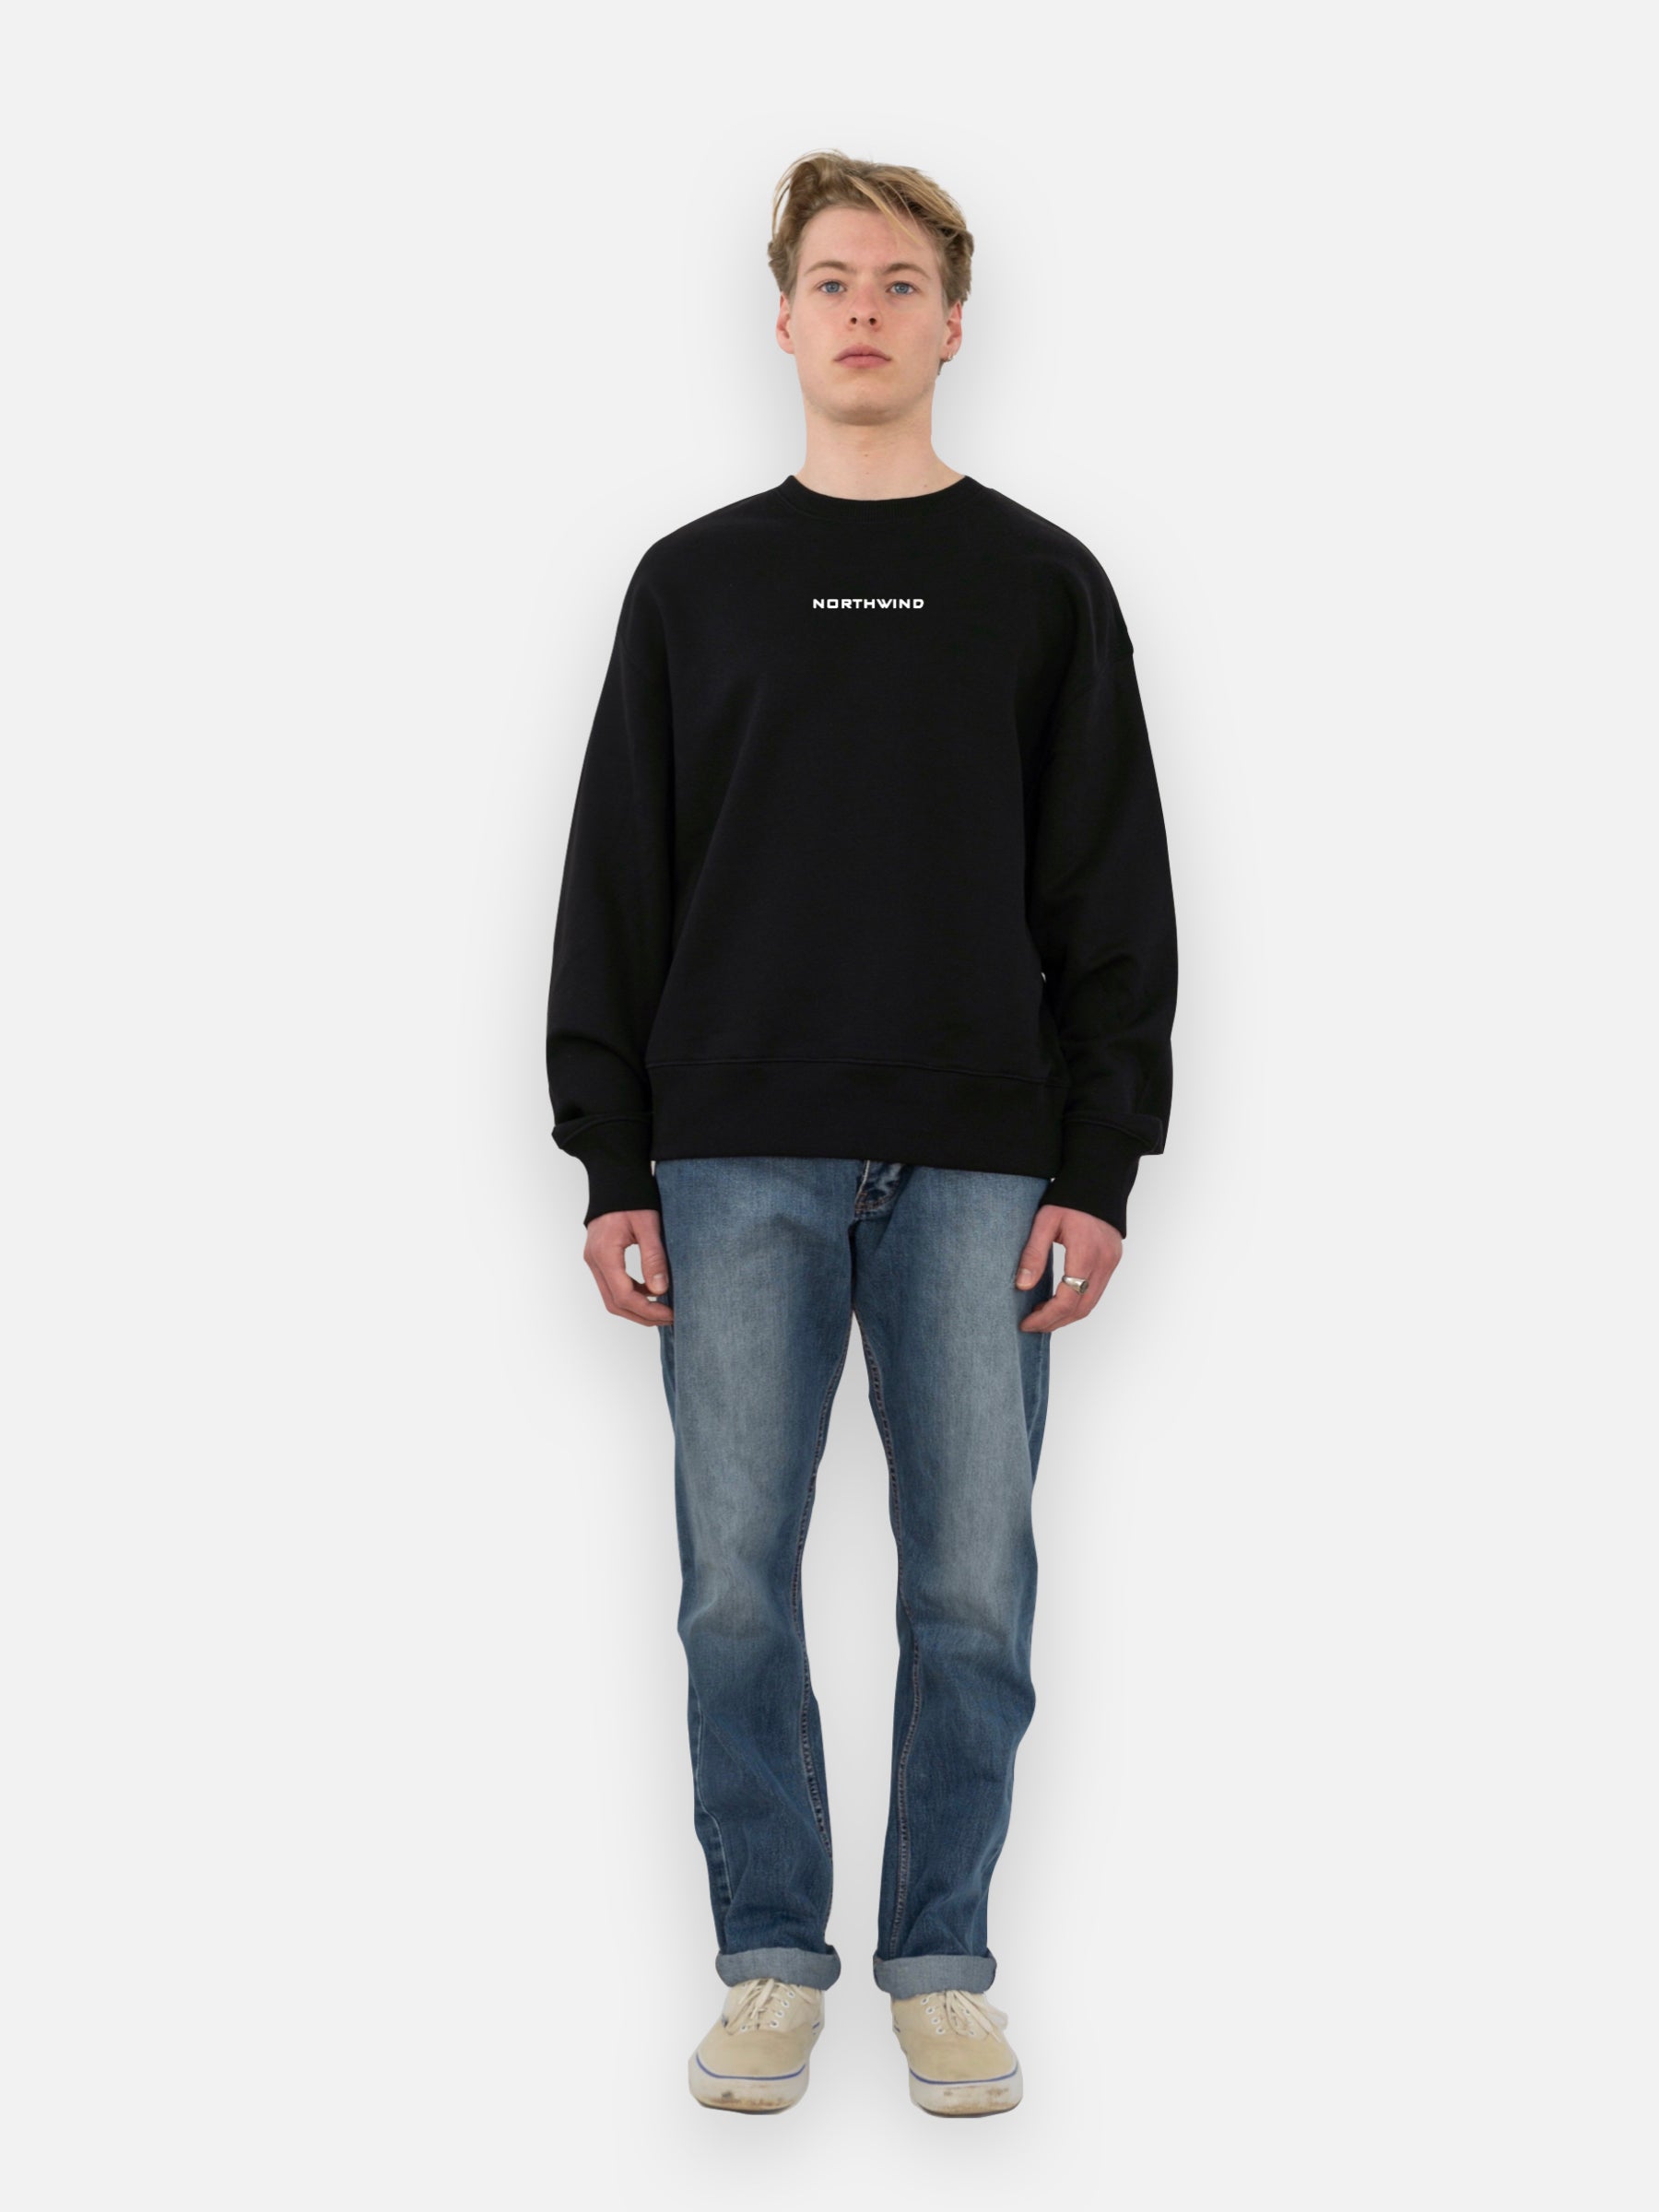 Cosmos Sweatshirt - Black